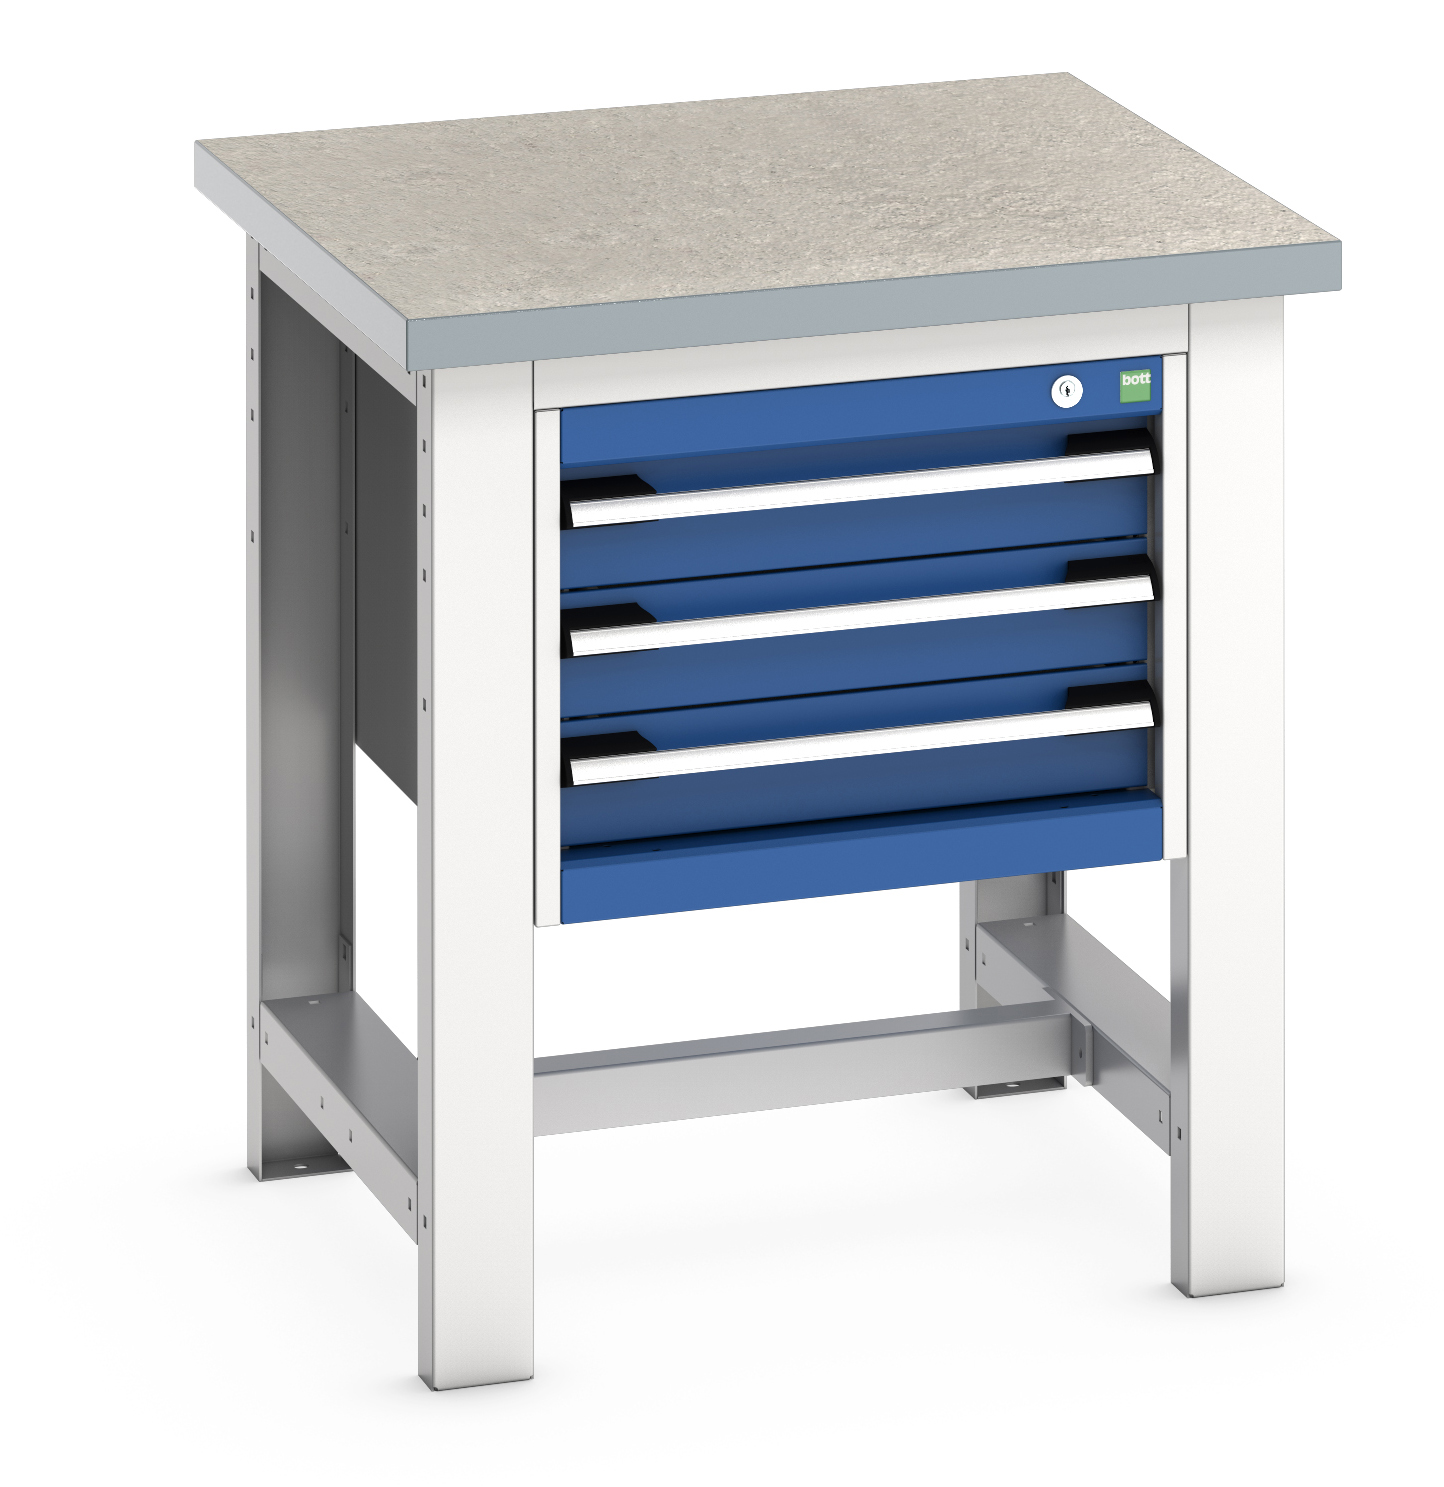 Bott Cubio Framework Workstand With 3 Drawer Cabinet - 41003526.11V